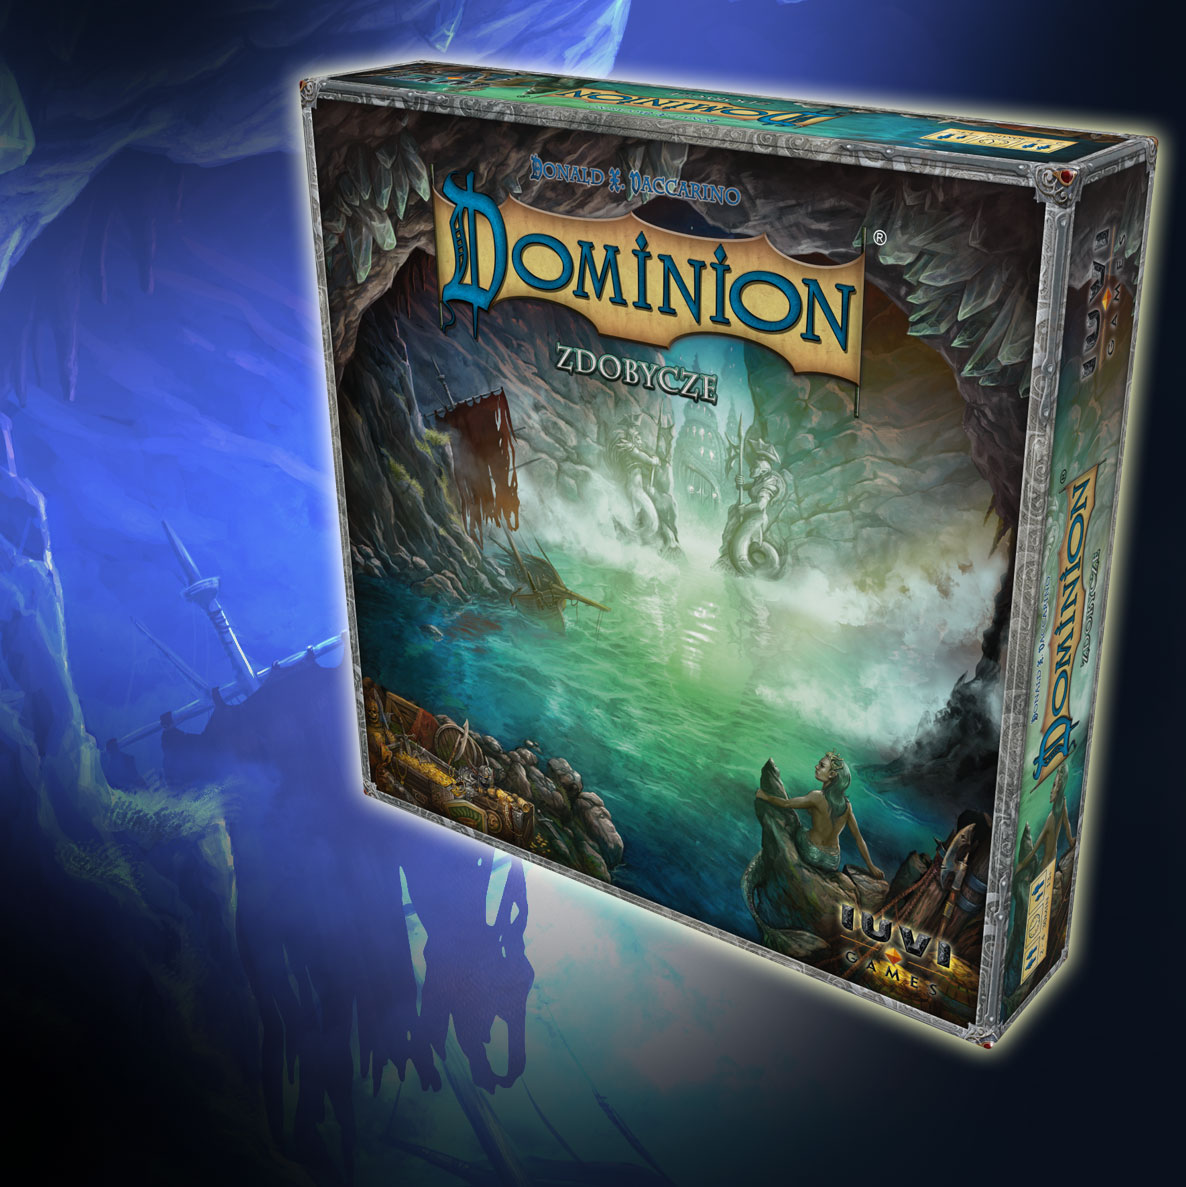 pudełko dodatku do gry Dominion: Zdobycze